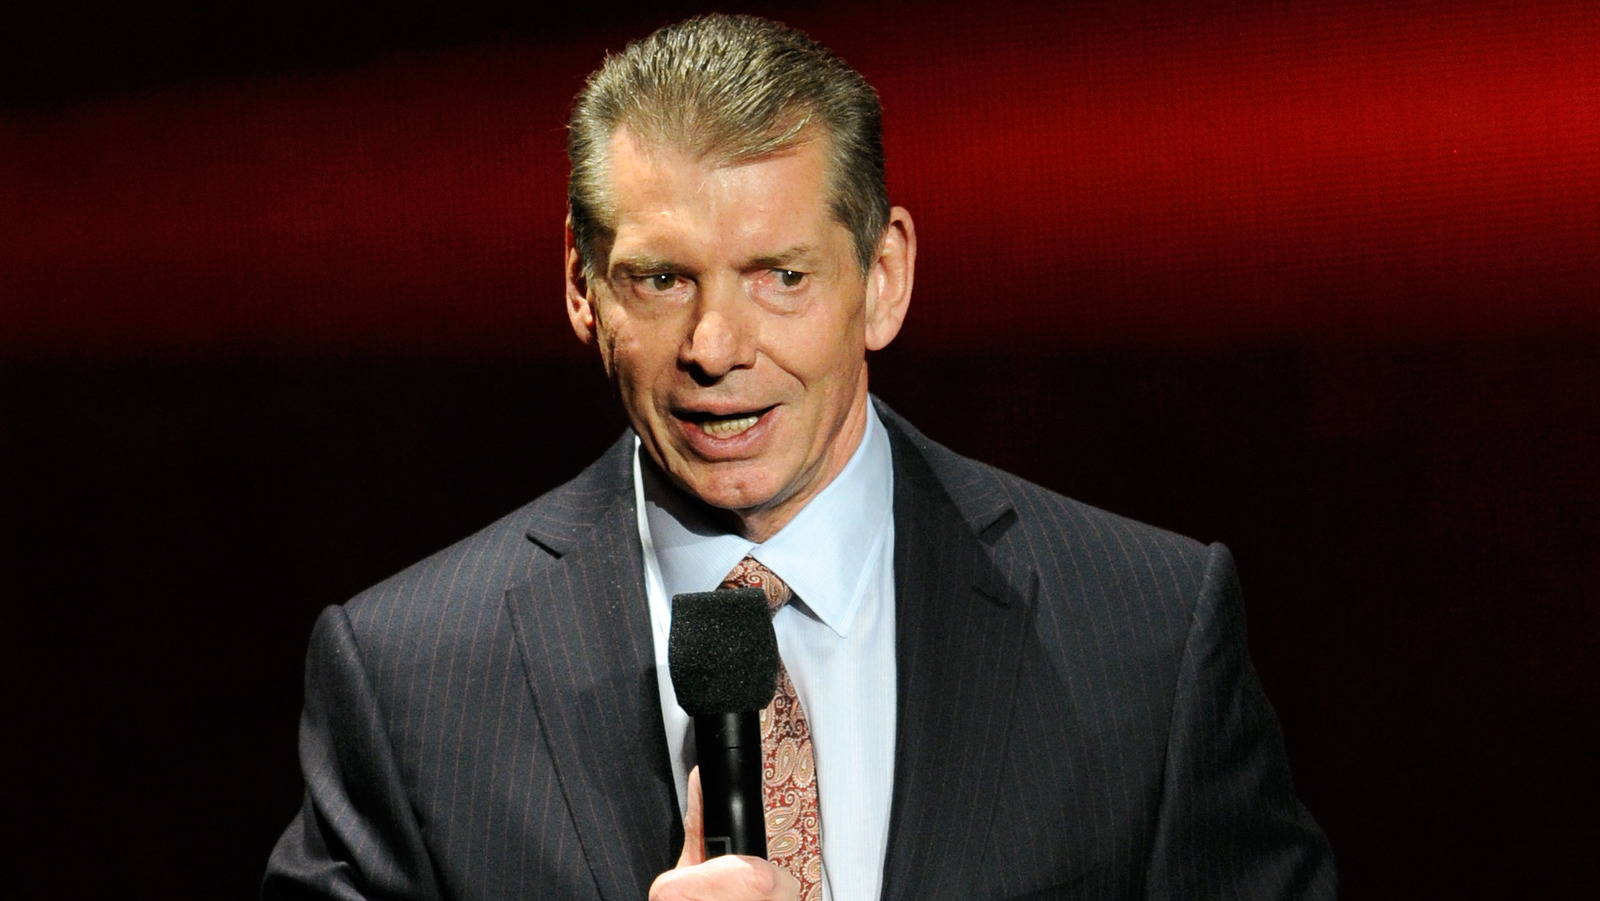 Bufete de abogados lanza sitio web para ayudar a las víctimas de 'Vince McMahon o cualquier persona de WWE/UFC'